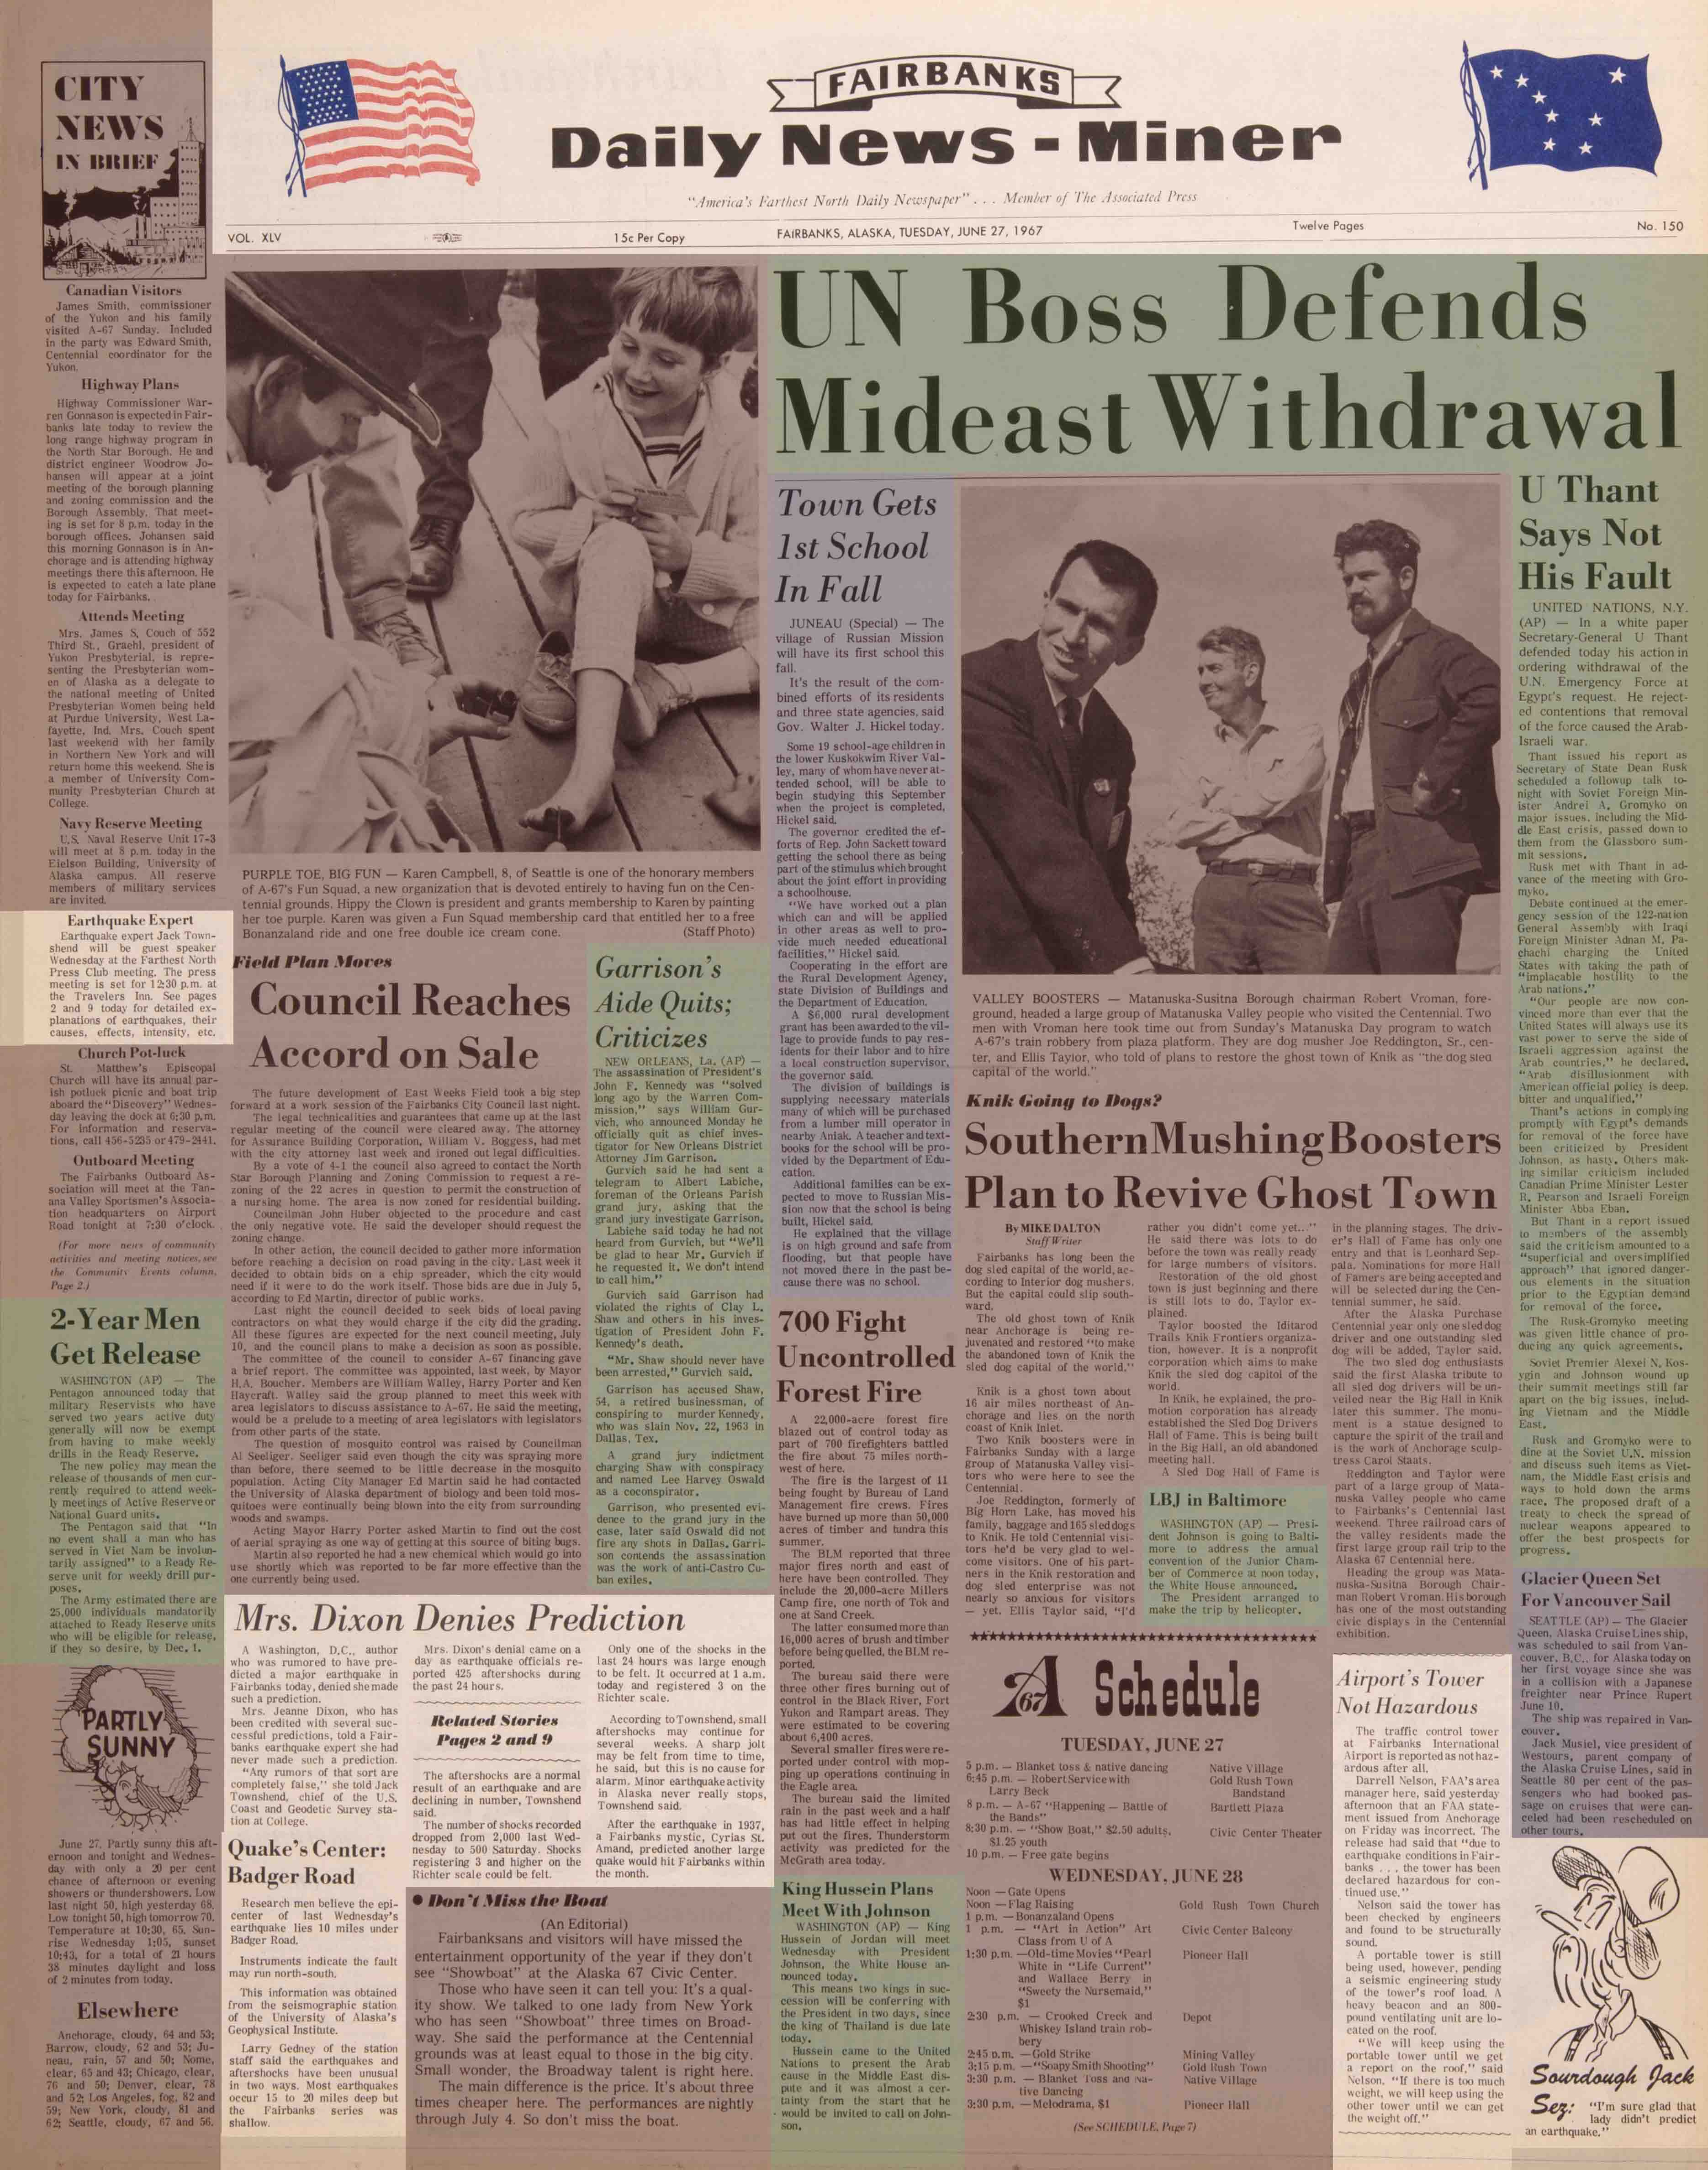 1967 June 27, Fairbanks Daily News-Miner (pg 1)